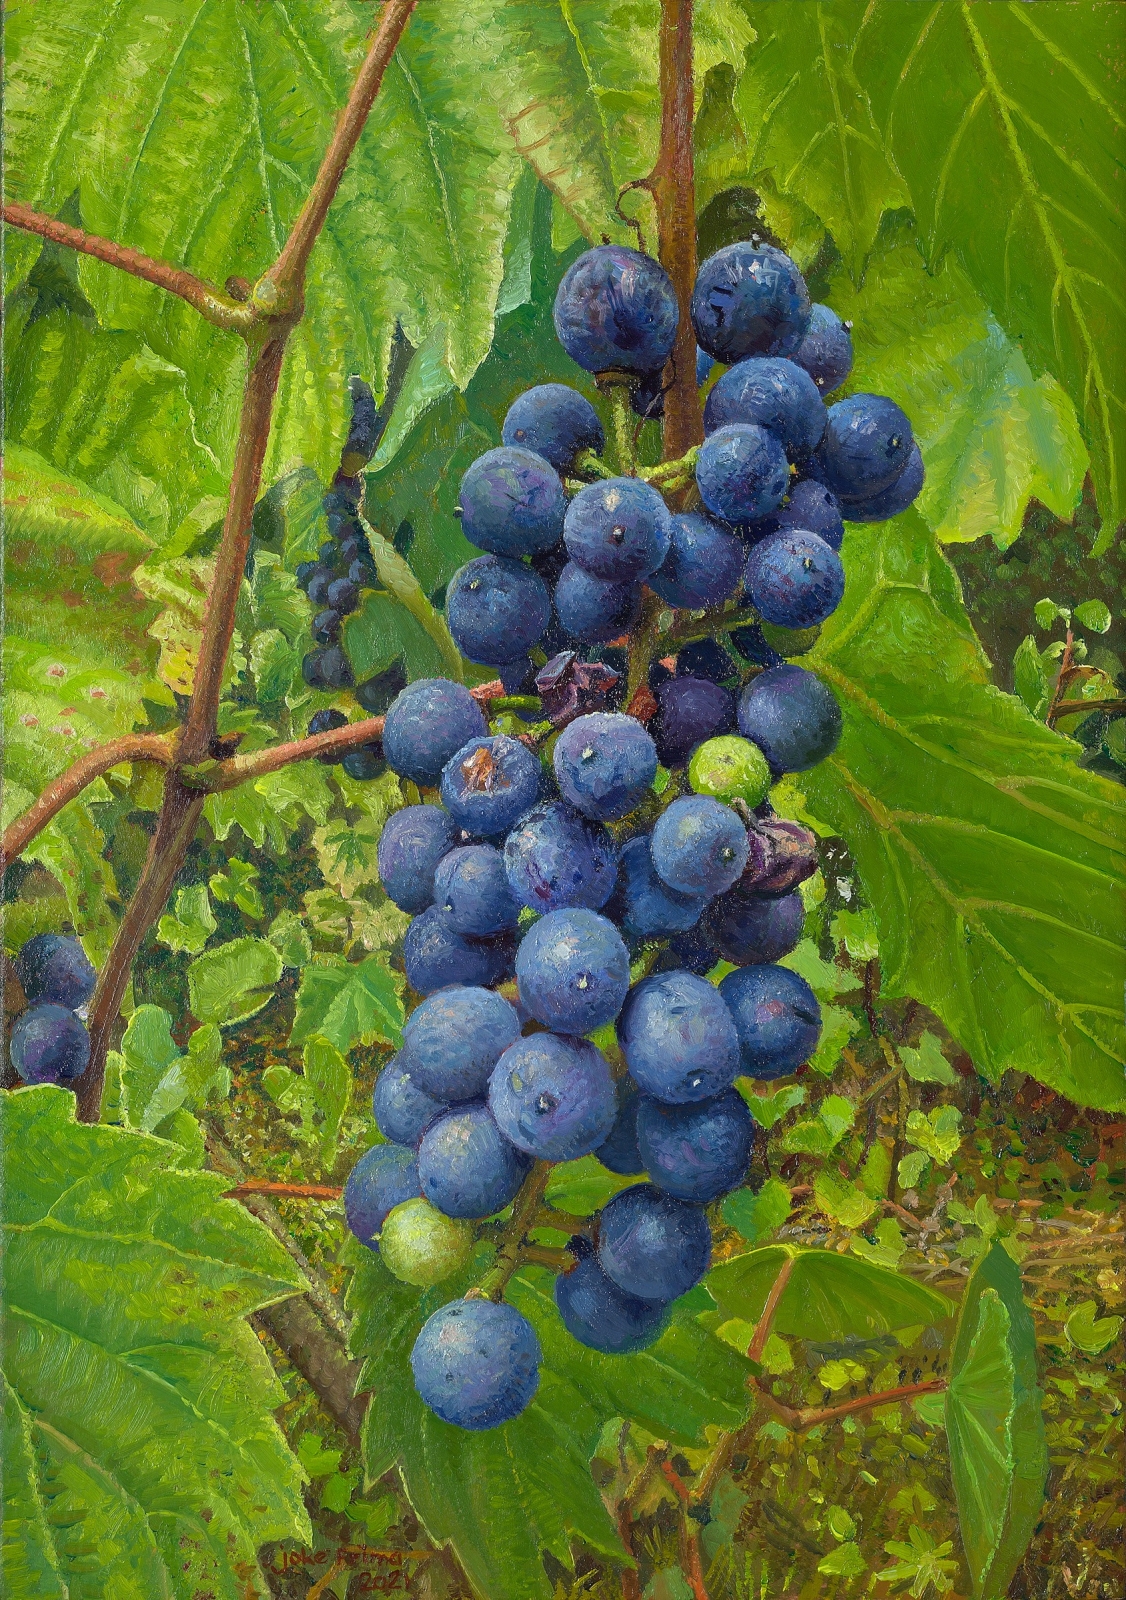 Wijngaard-druiven